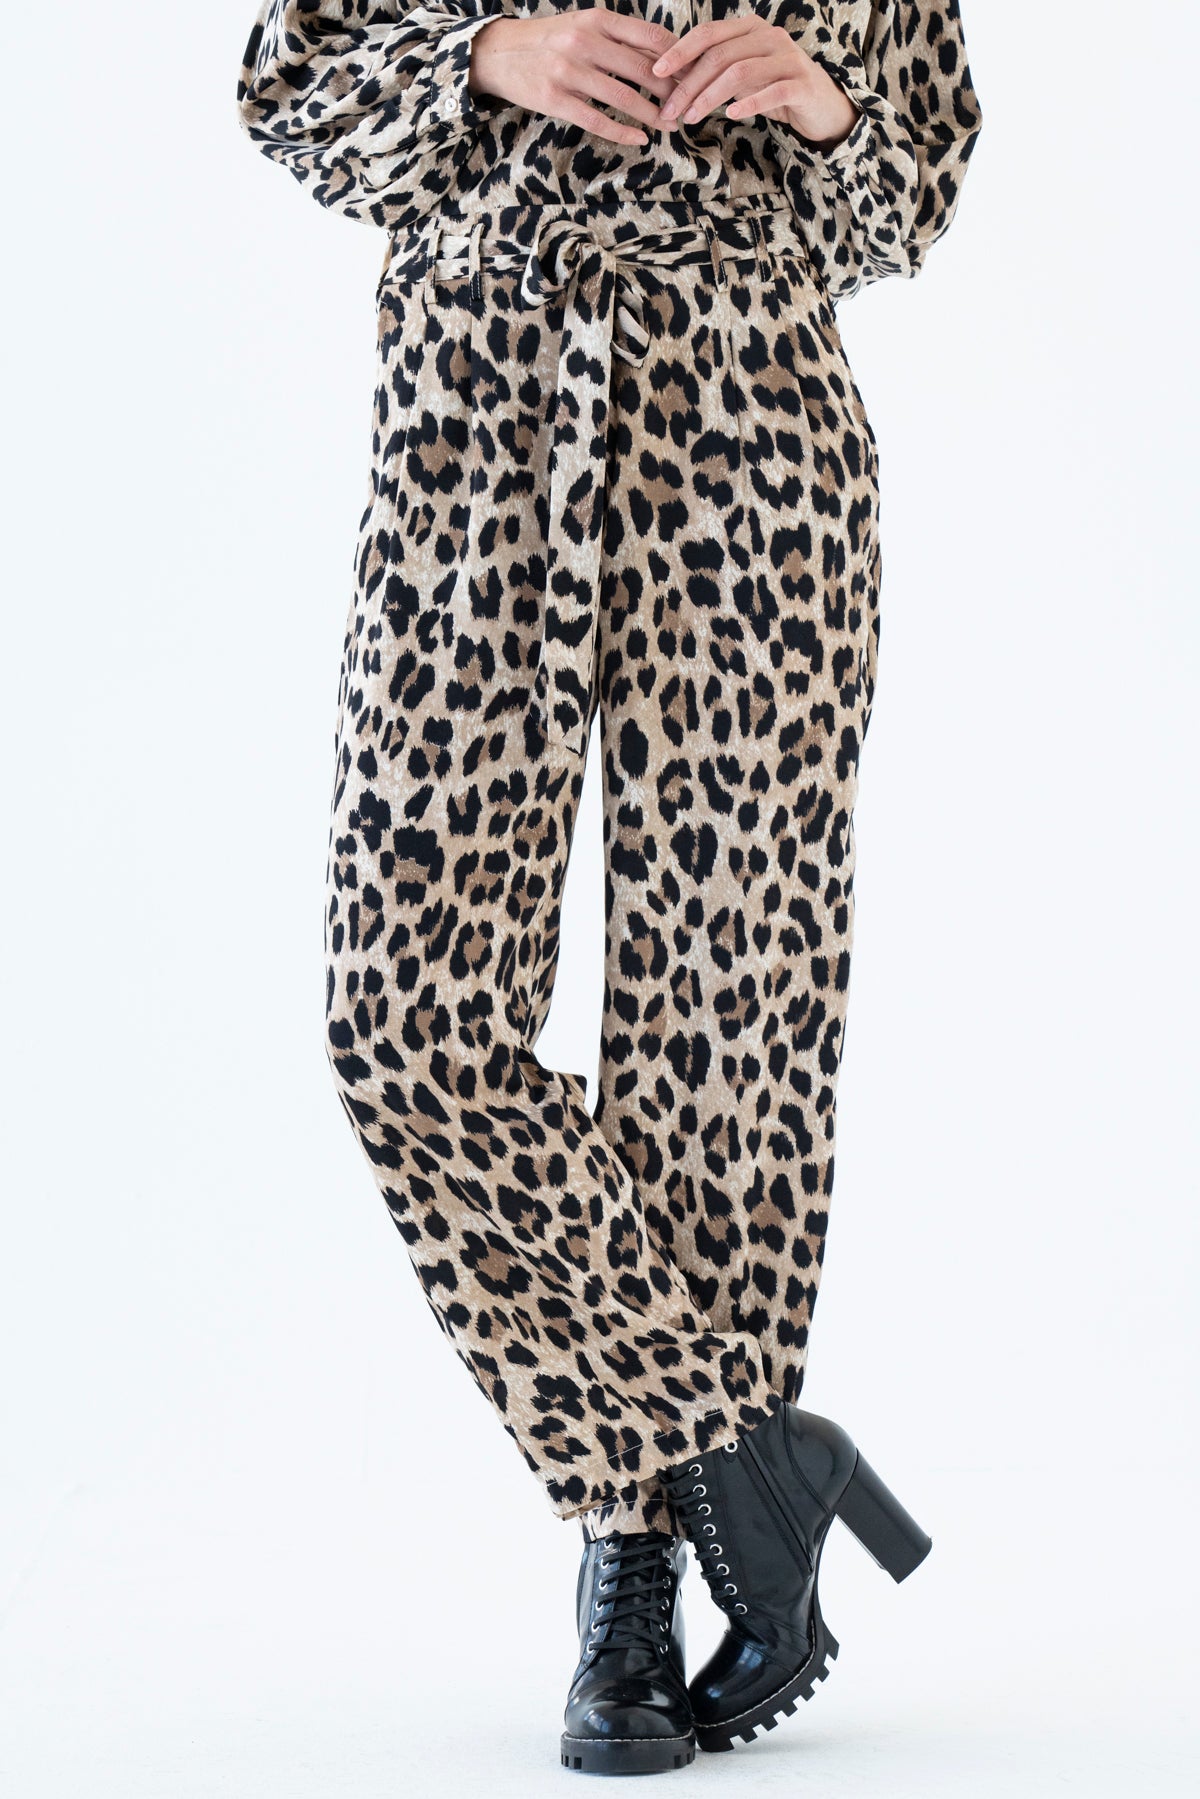 Leopard Pant